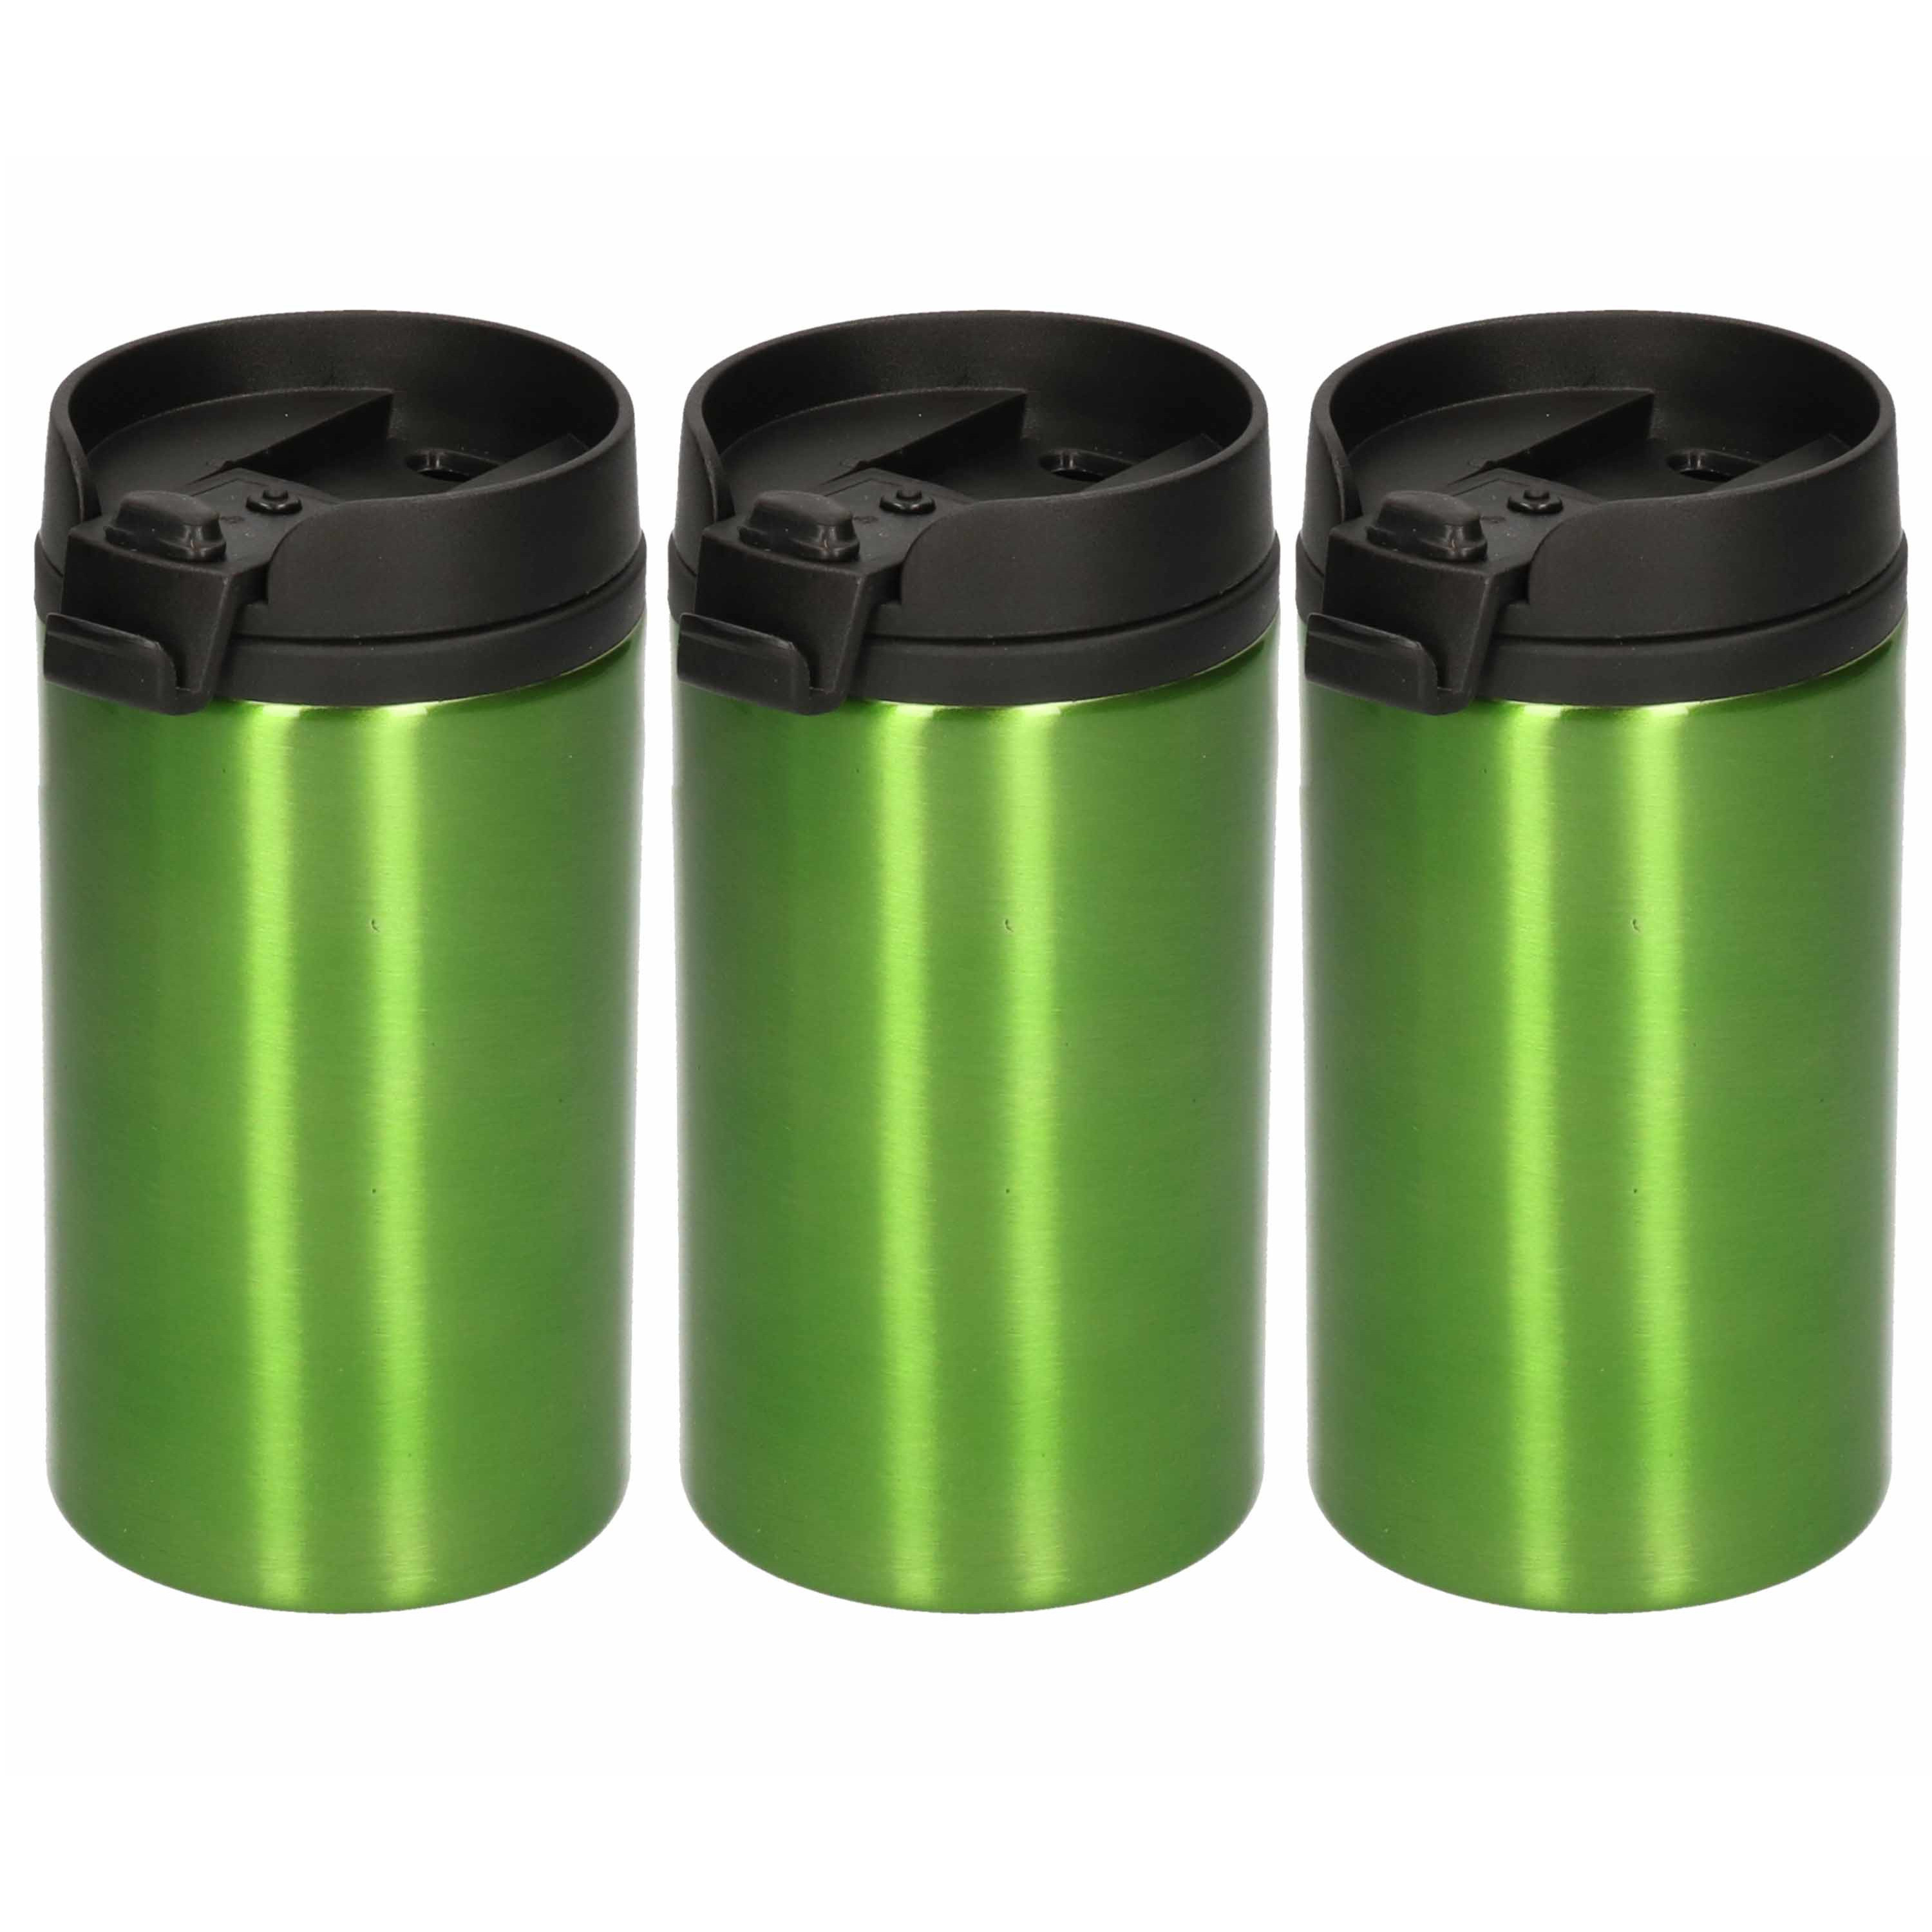 3x Isoleerbekers RVS metallic groen 320 ml